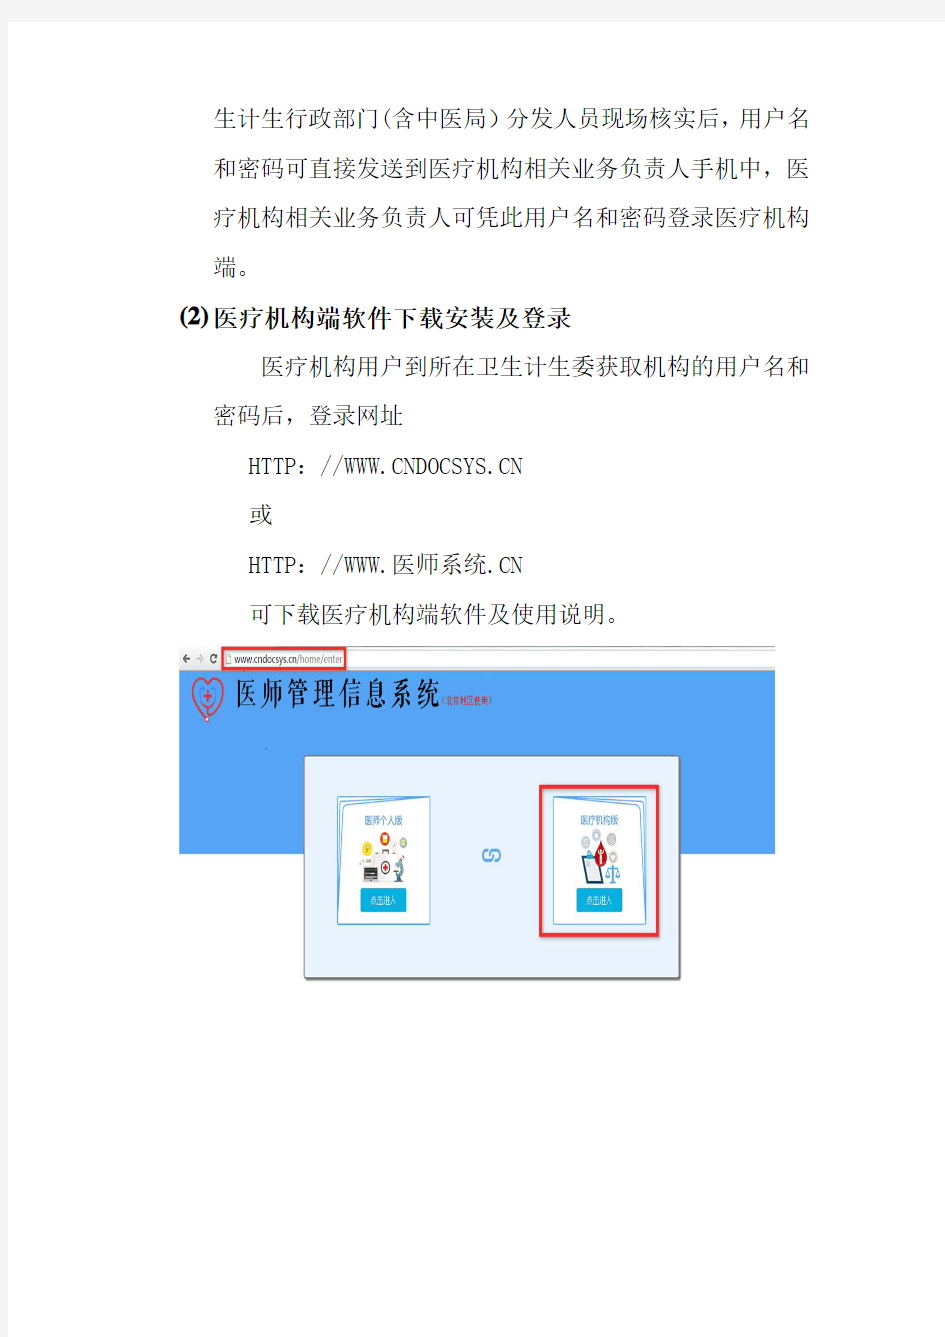 北京医师电子化注册系统医疗机构必读手册V1.02